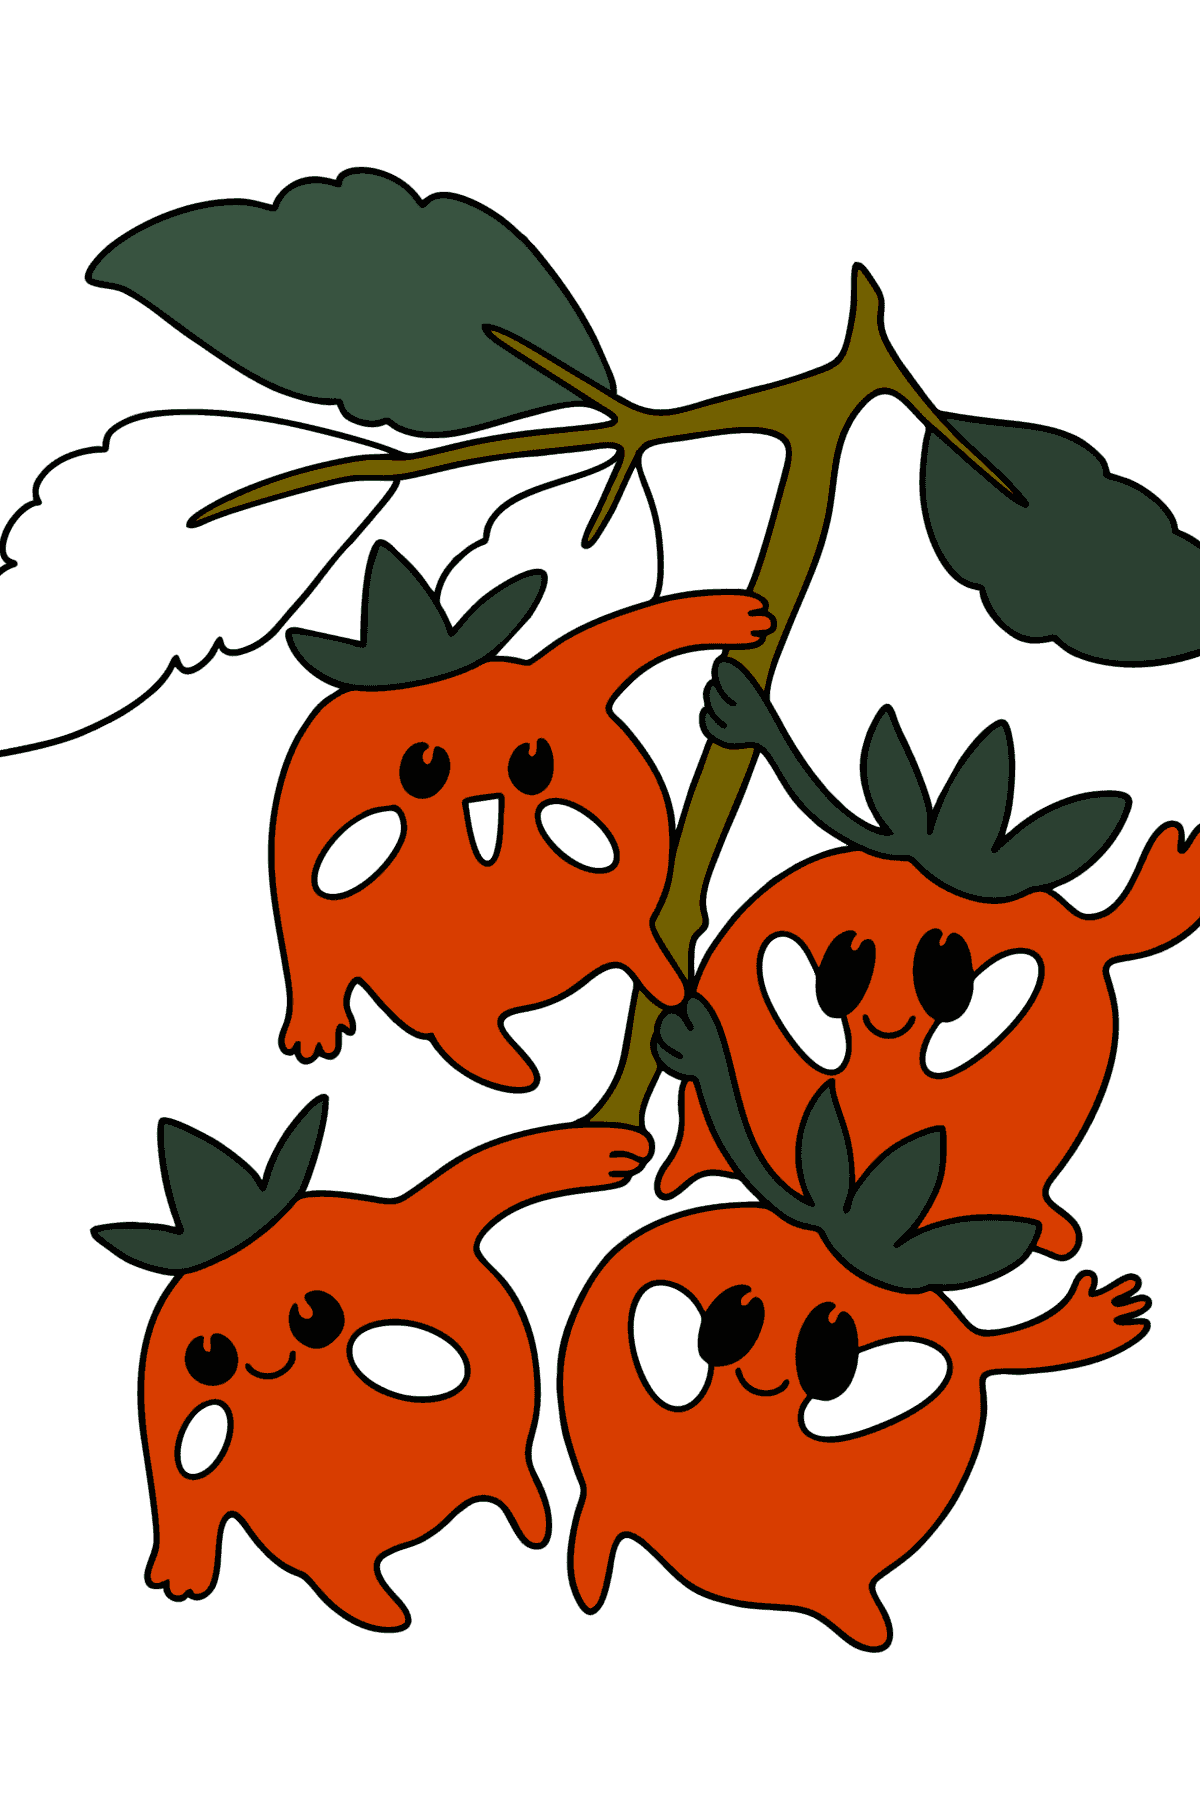 Boyama sayfası Çeri domatesler - Boyamalar çocuklar için